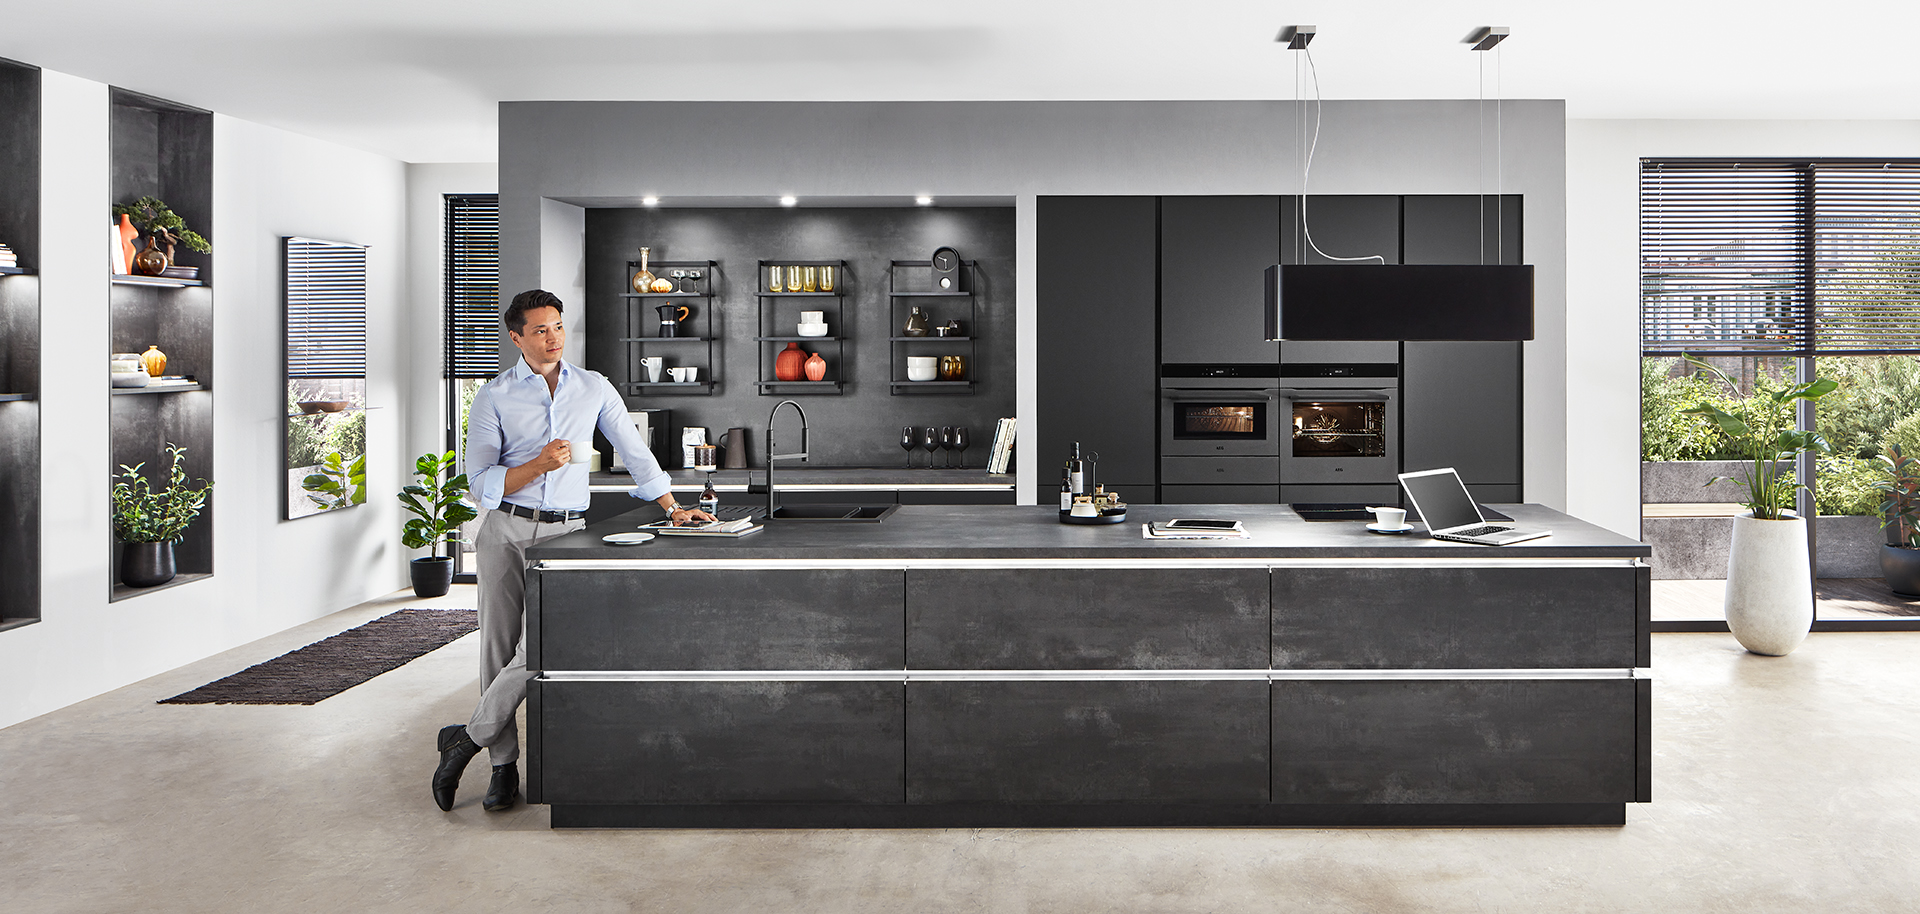 Moderne keukeninterieur met een strak ontwerp met zwarte kasten, ingebouwde apparaten en een persoon die eten bereidt op het kookeiland.